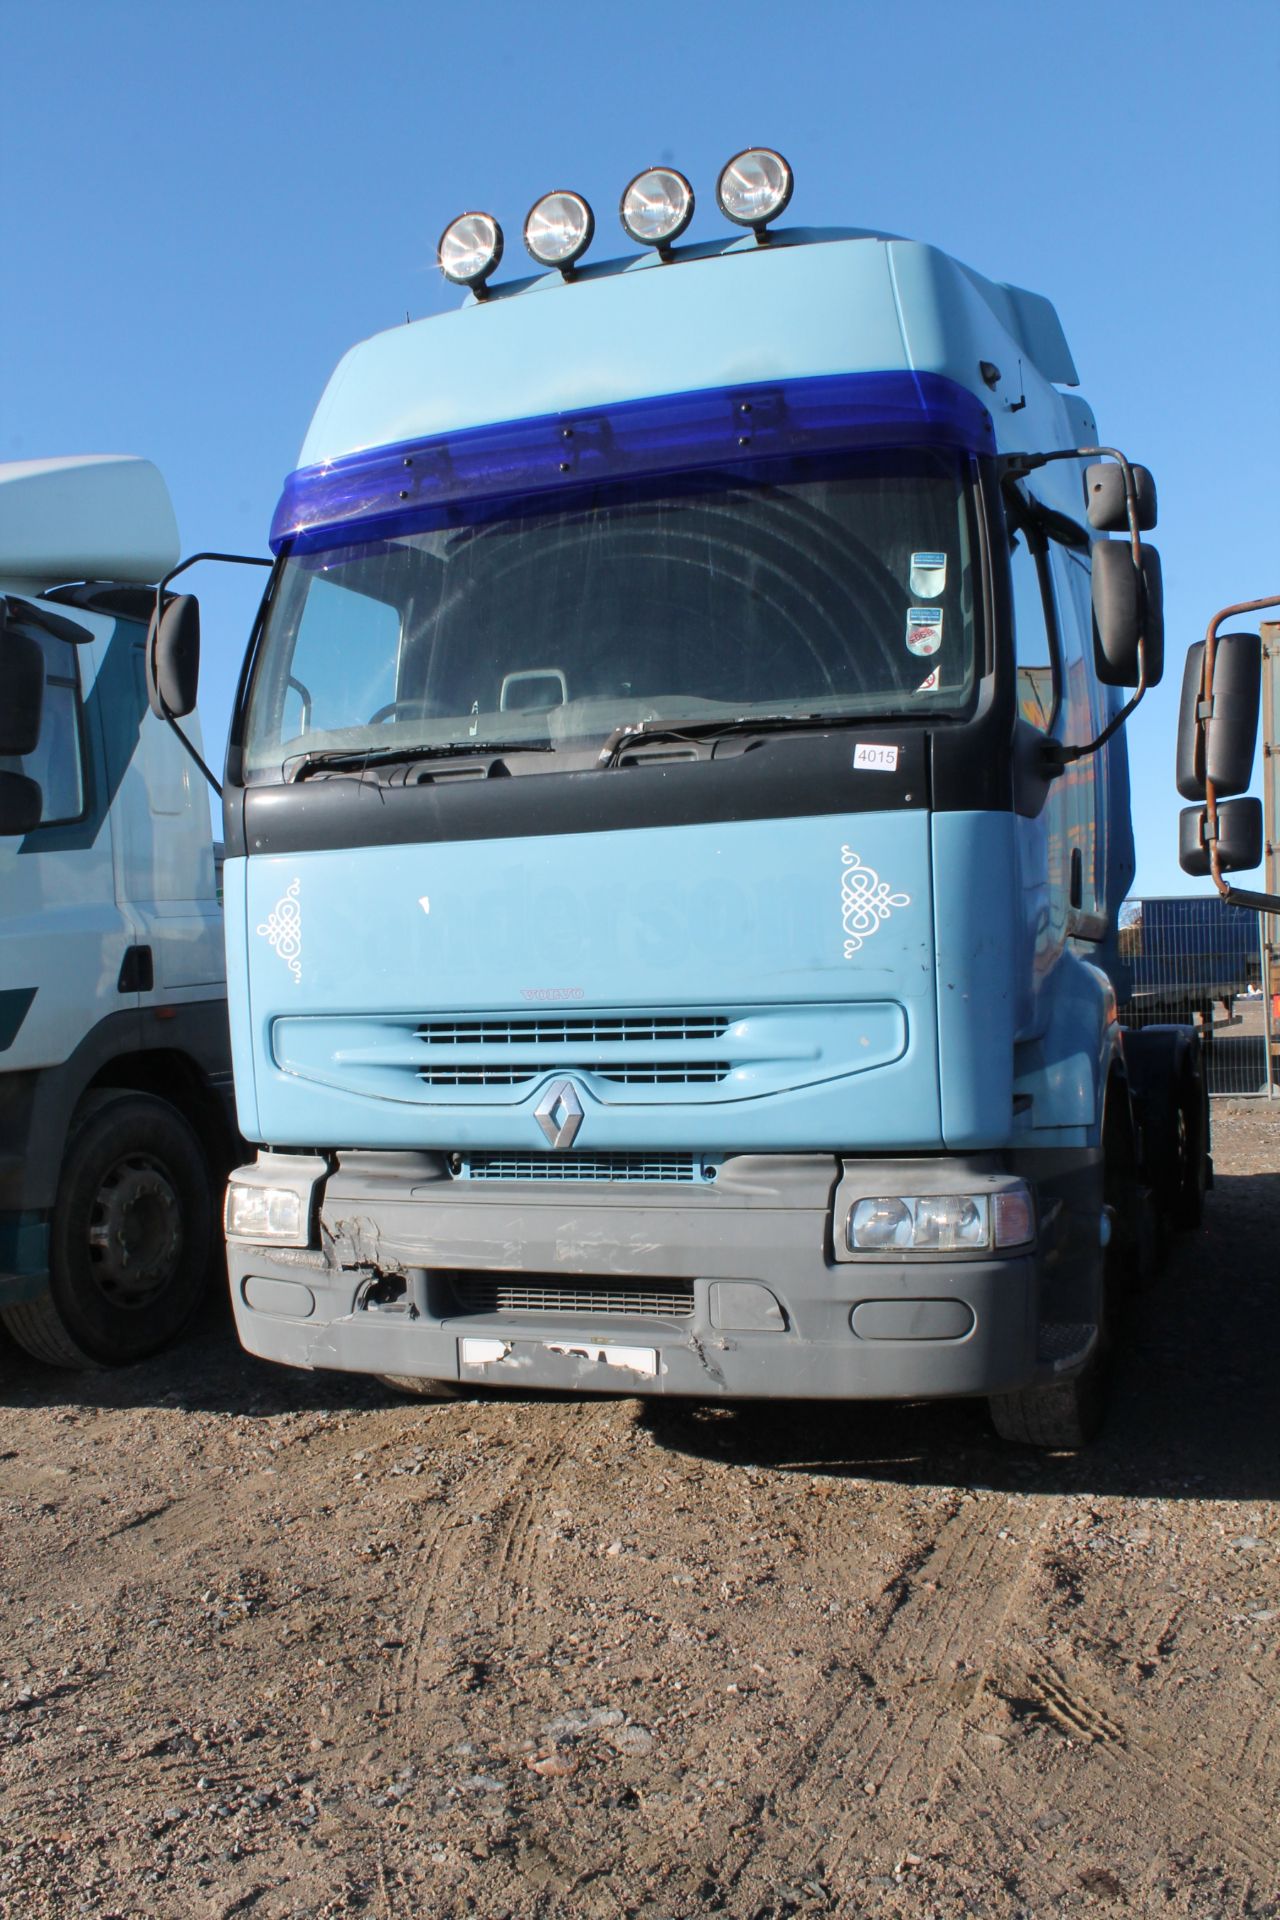 Renault V.i. Premium 385.22 6x2 Aml Slp - 11116cc Truck